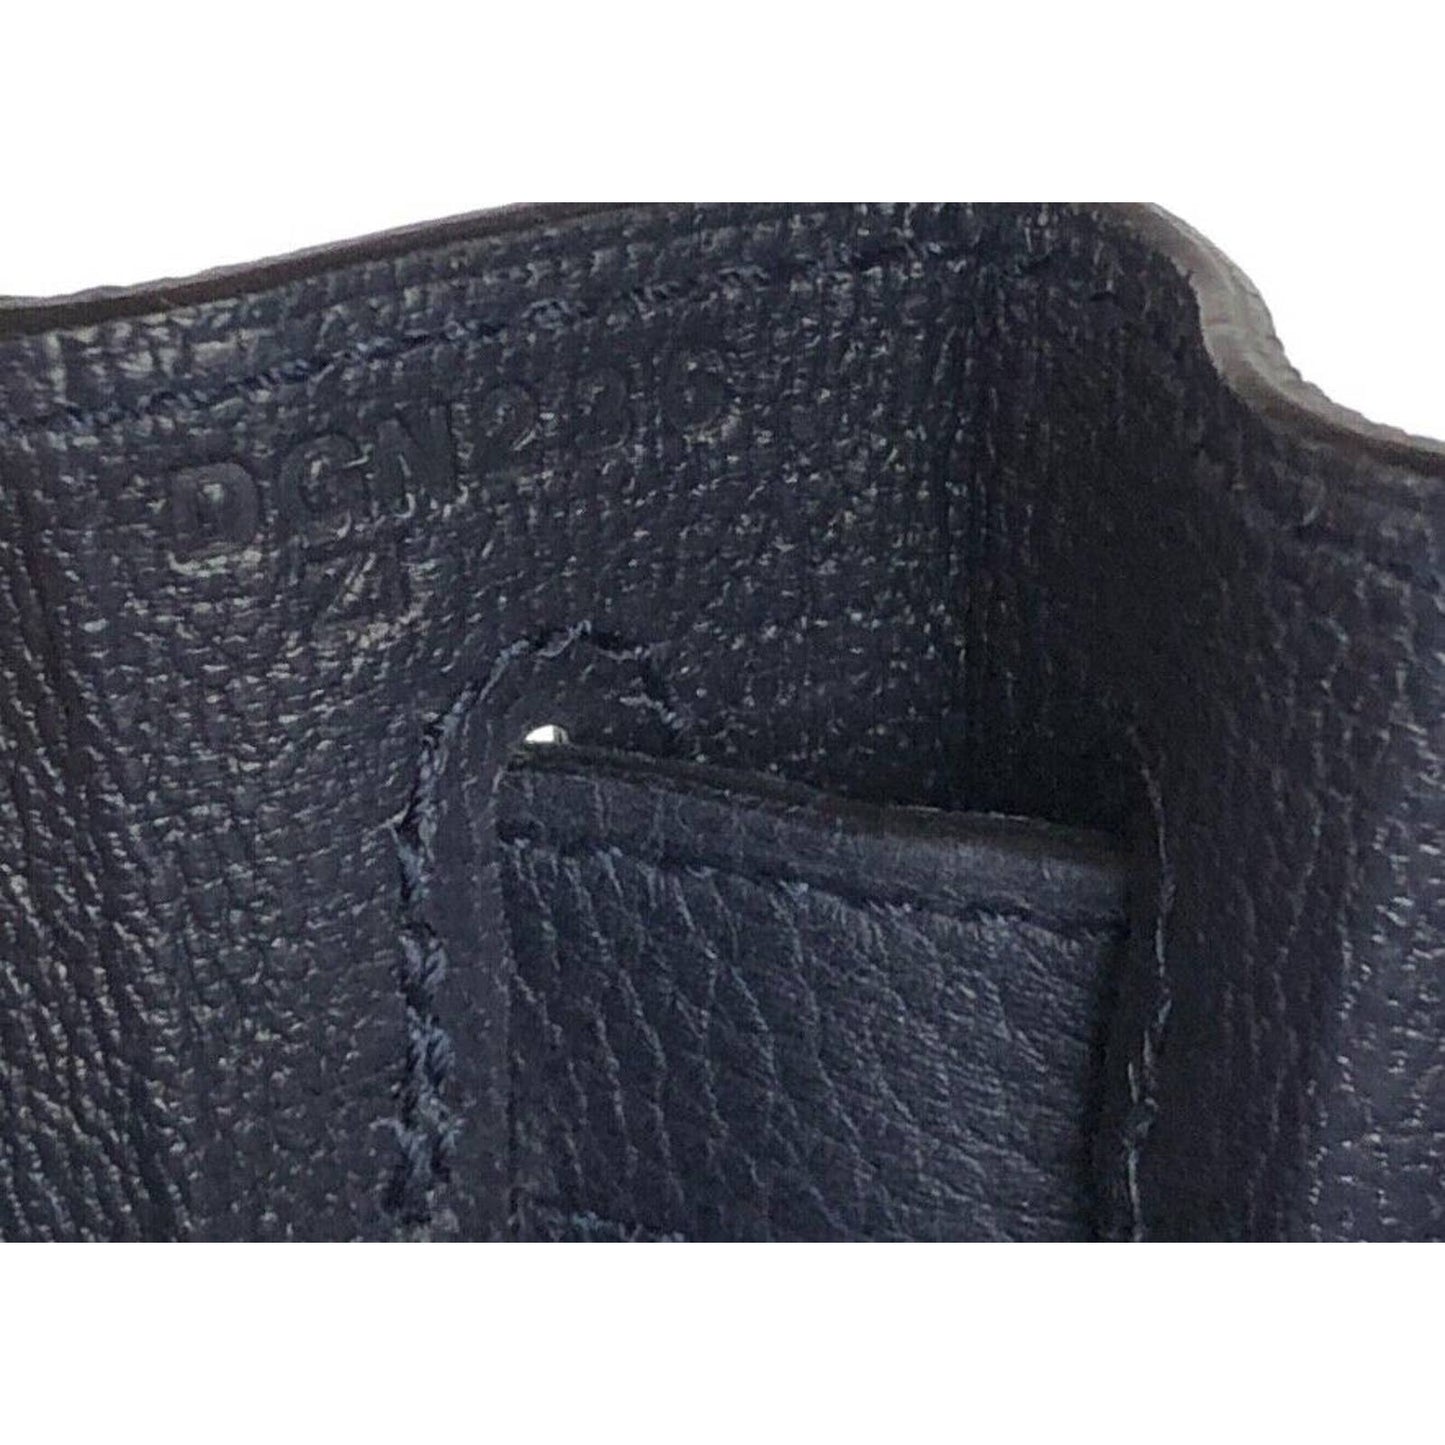 Hermes Kelly 28 Bleu Nuit Navy Dark Blue Leather Shoulder Bag Palladium Hardware